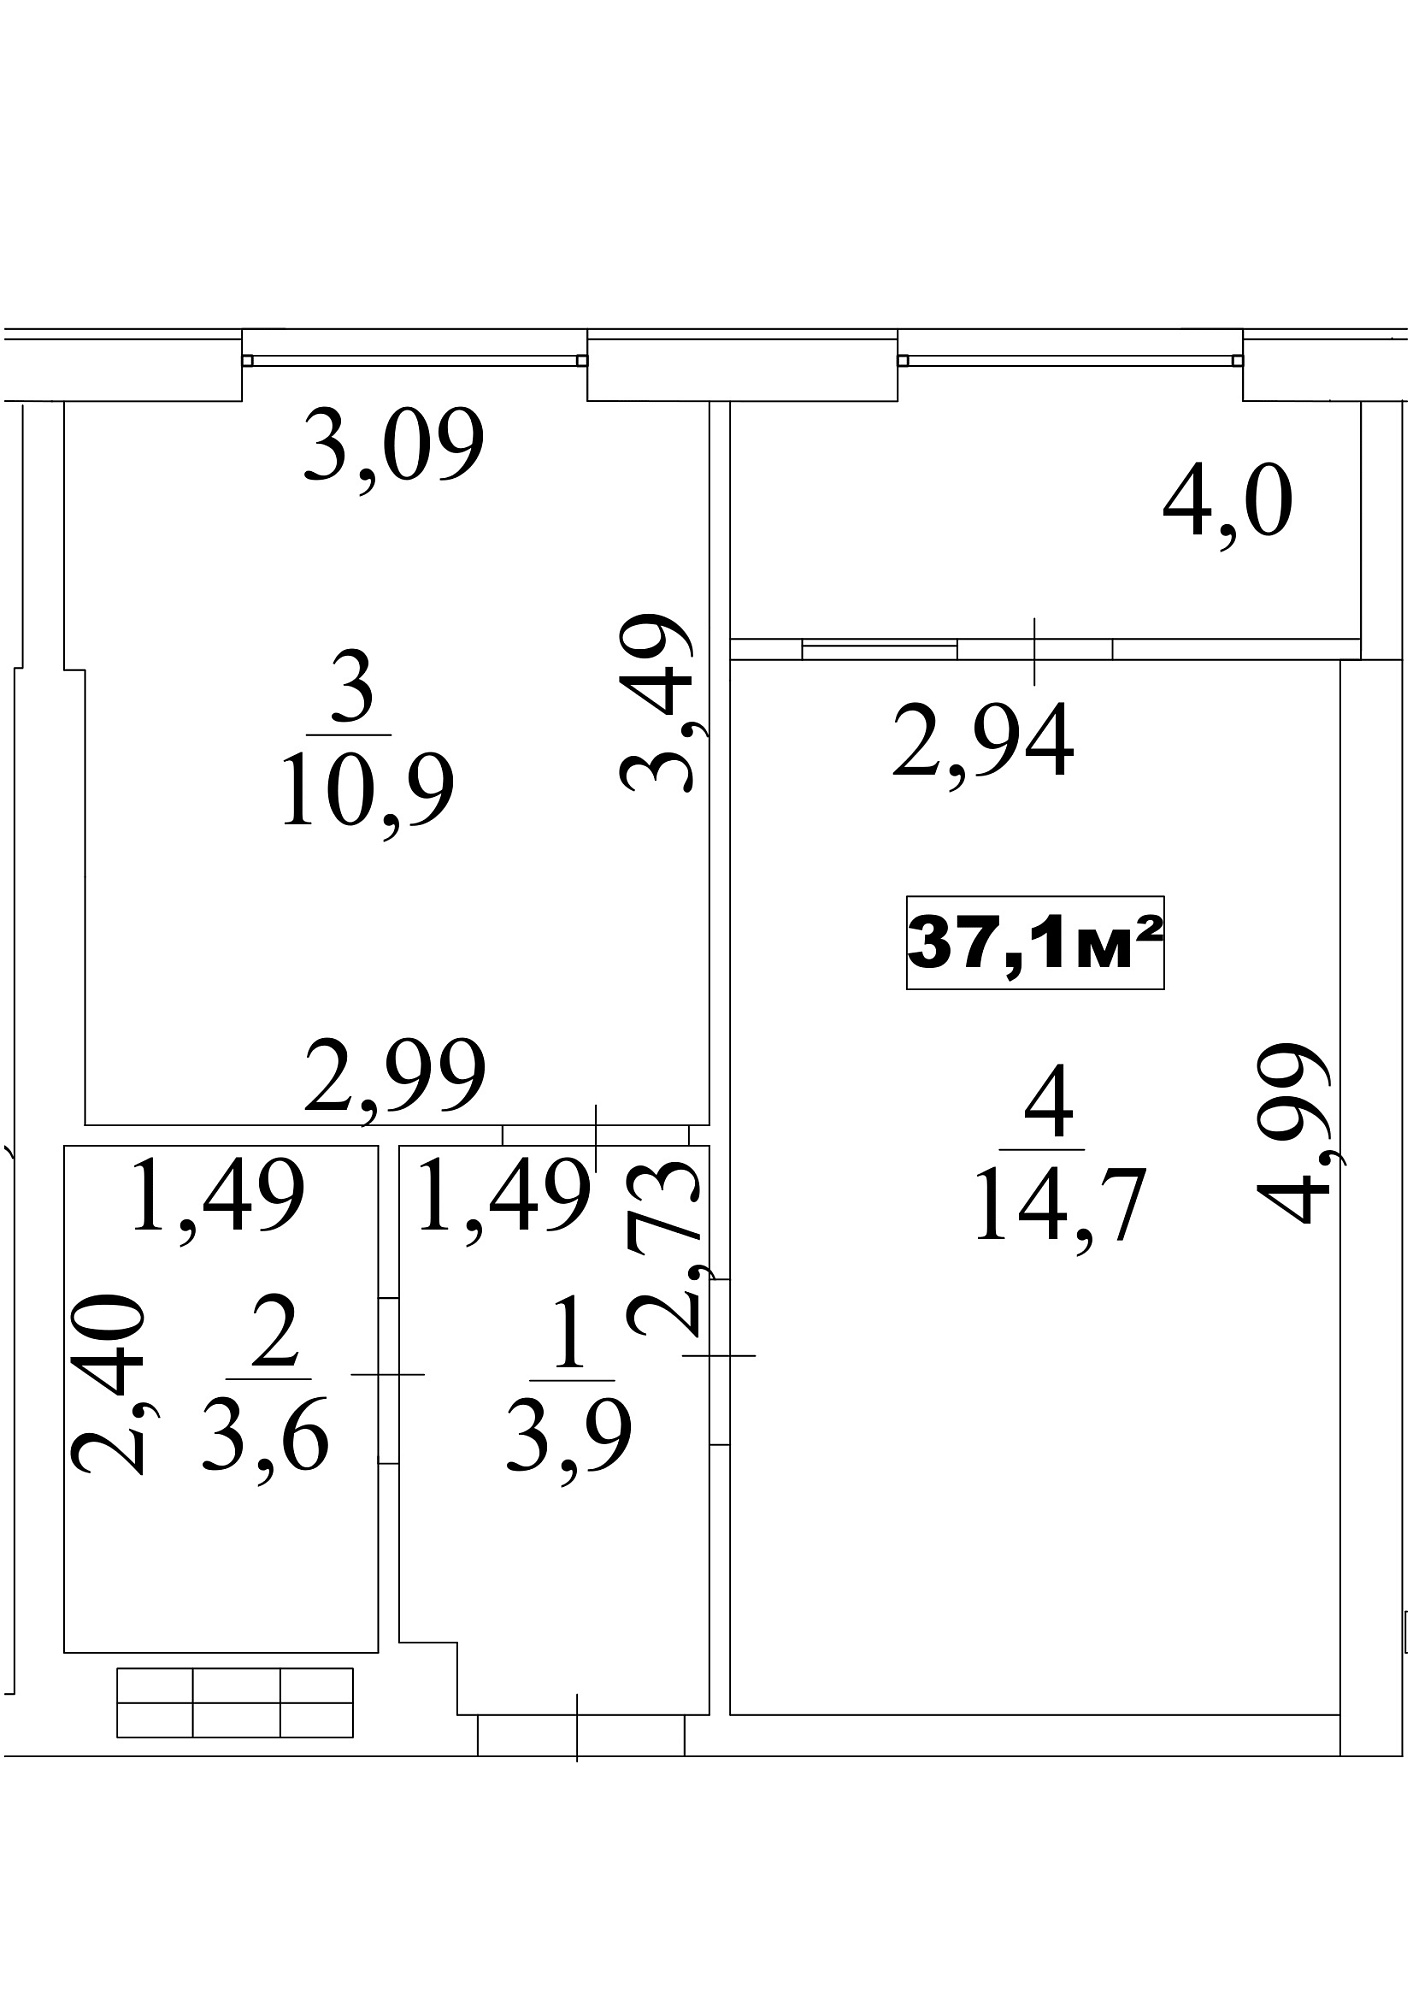 Планировка 1-к квартира площей 37.1м2, AB-10-03/0025а.